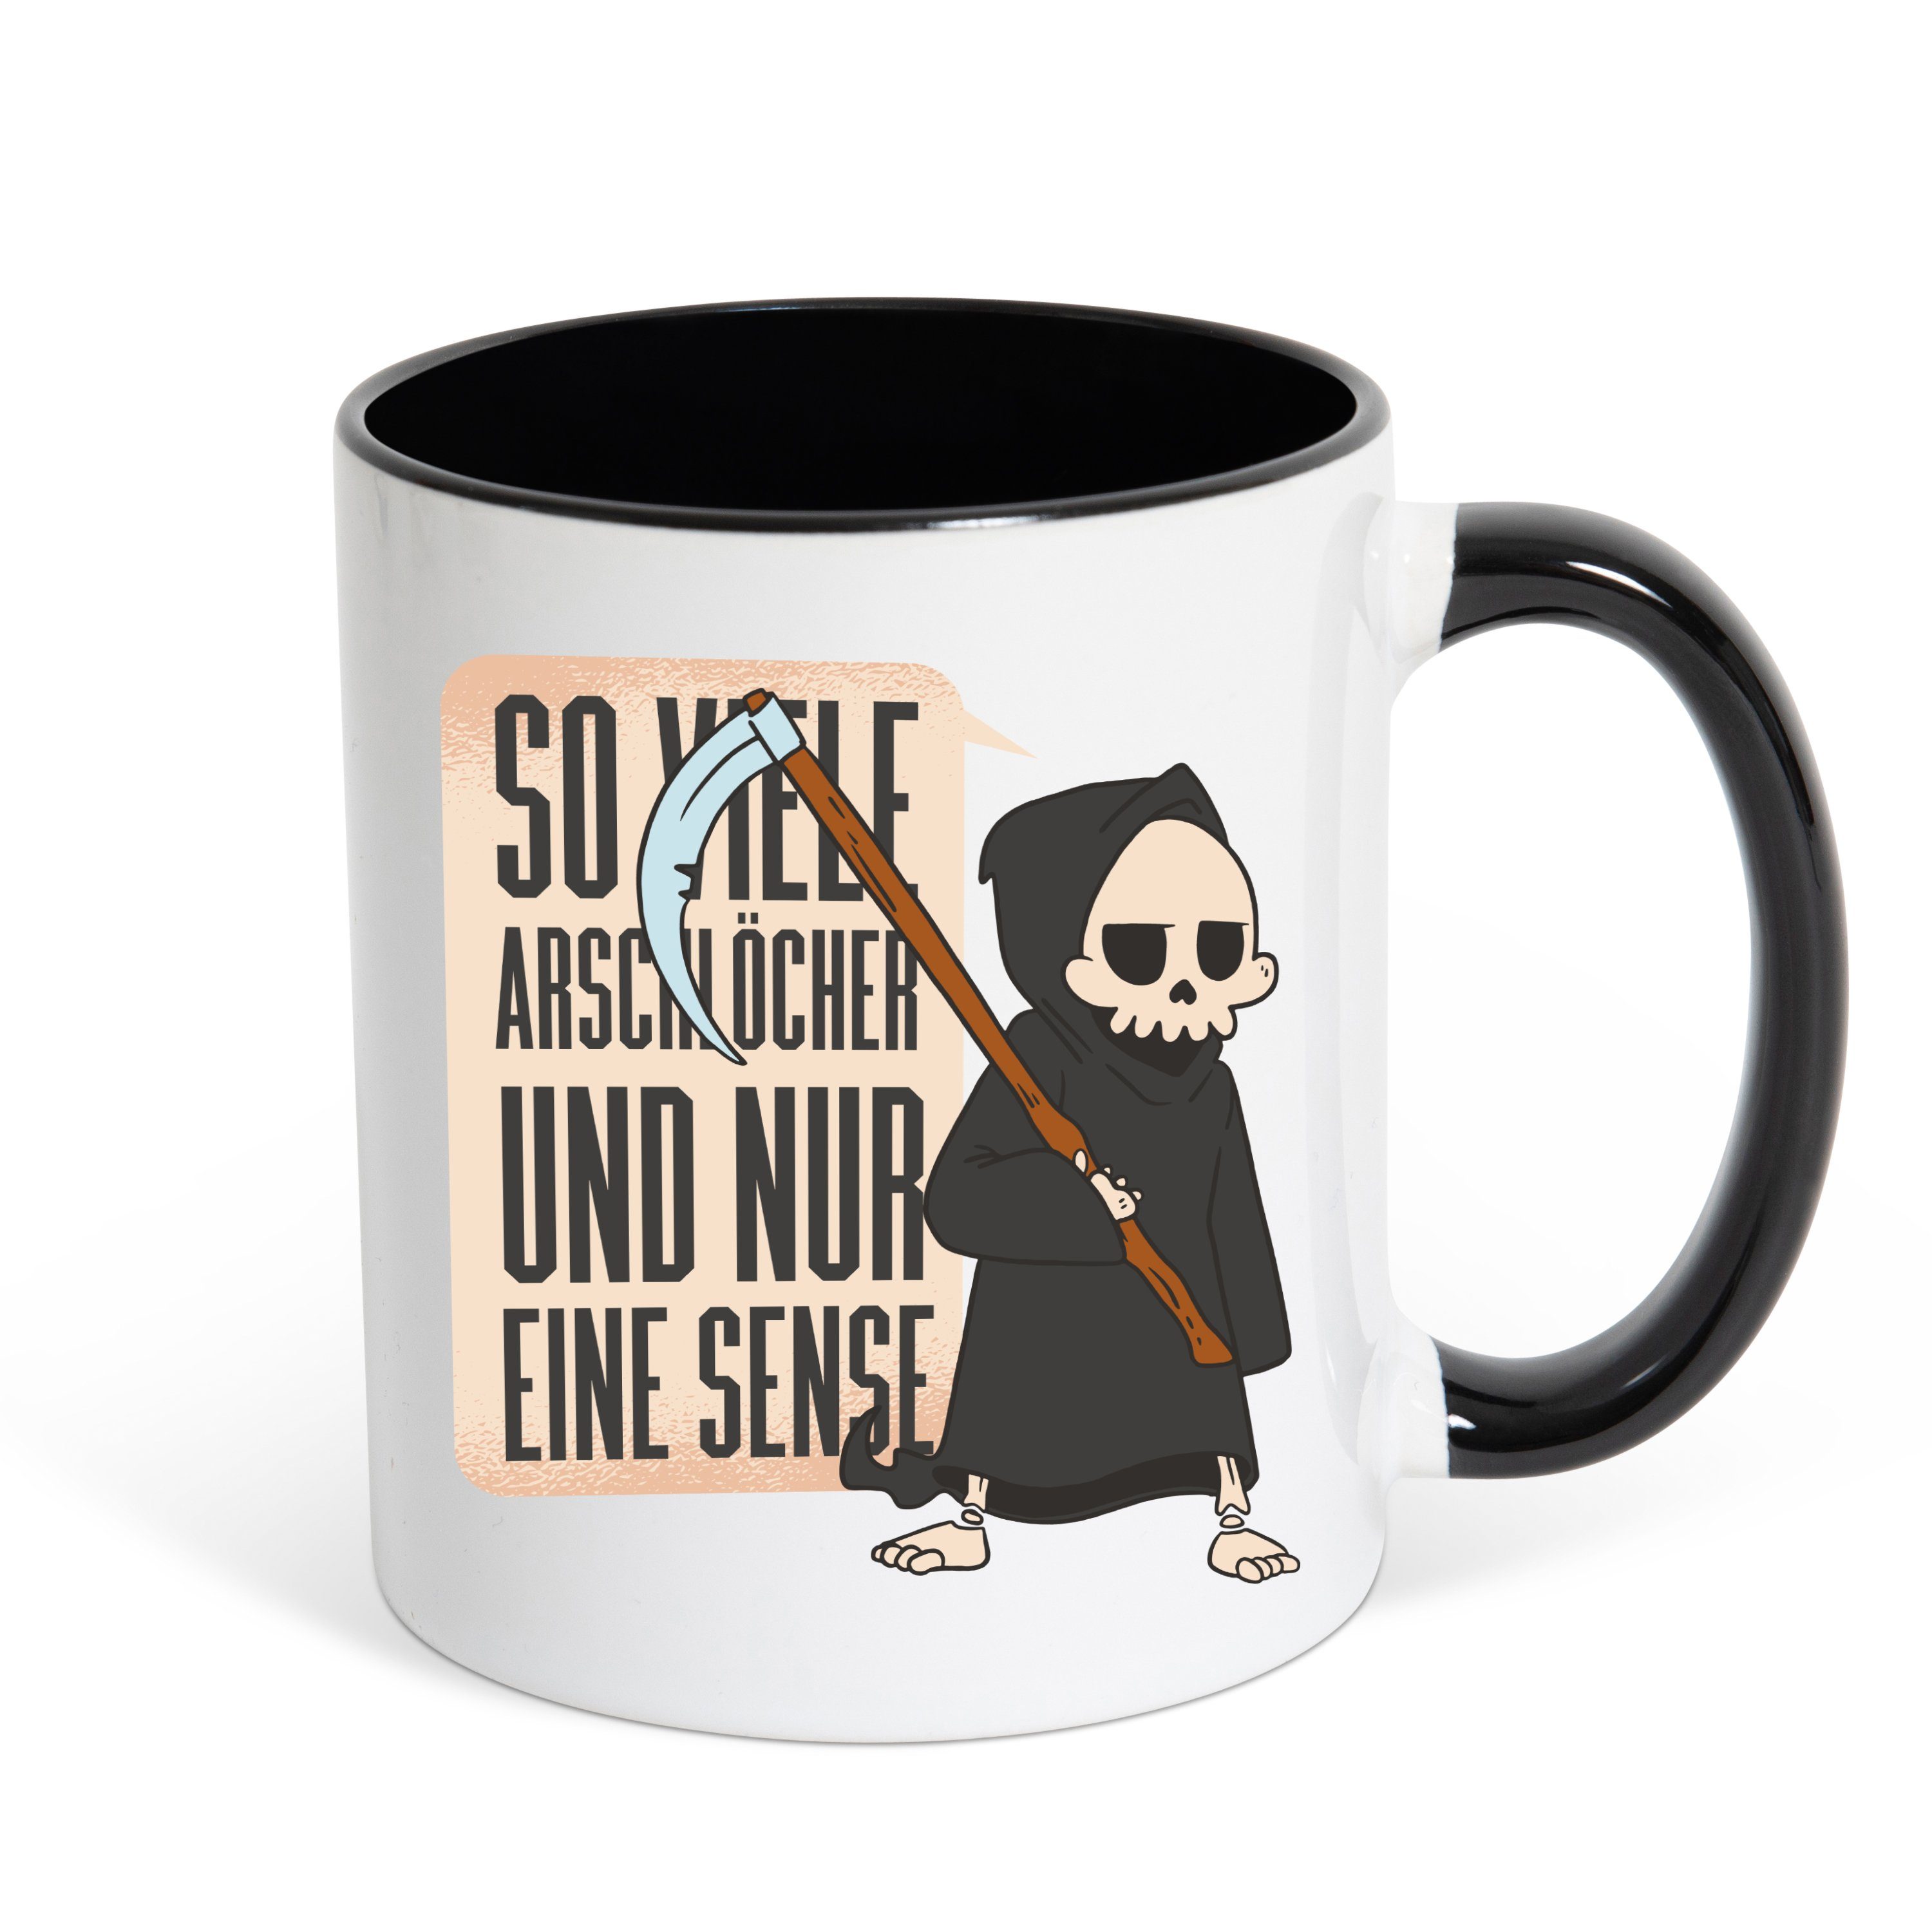 Youth Designz Tasse Nur eine Sense Kaffeetasse Geschenk mit lustigem Spruch, Keramik, mit Skelett Print Weiss/Schwarz